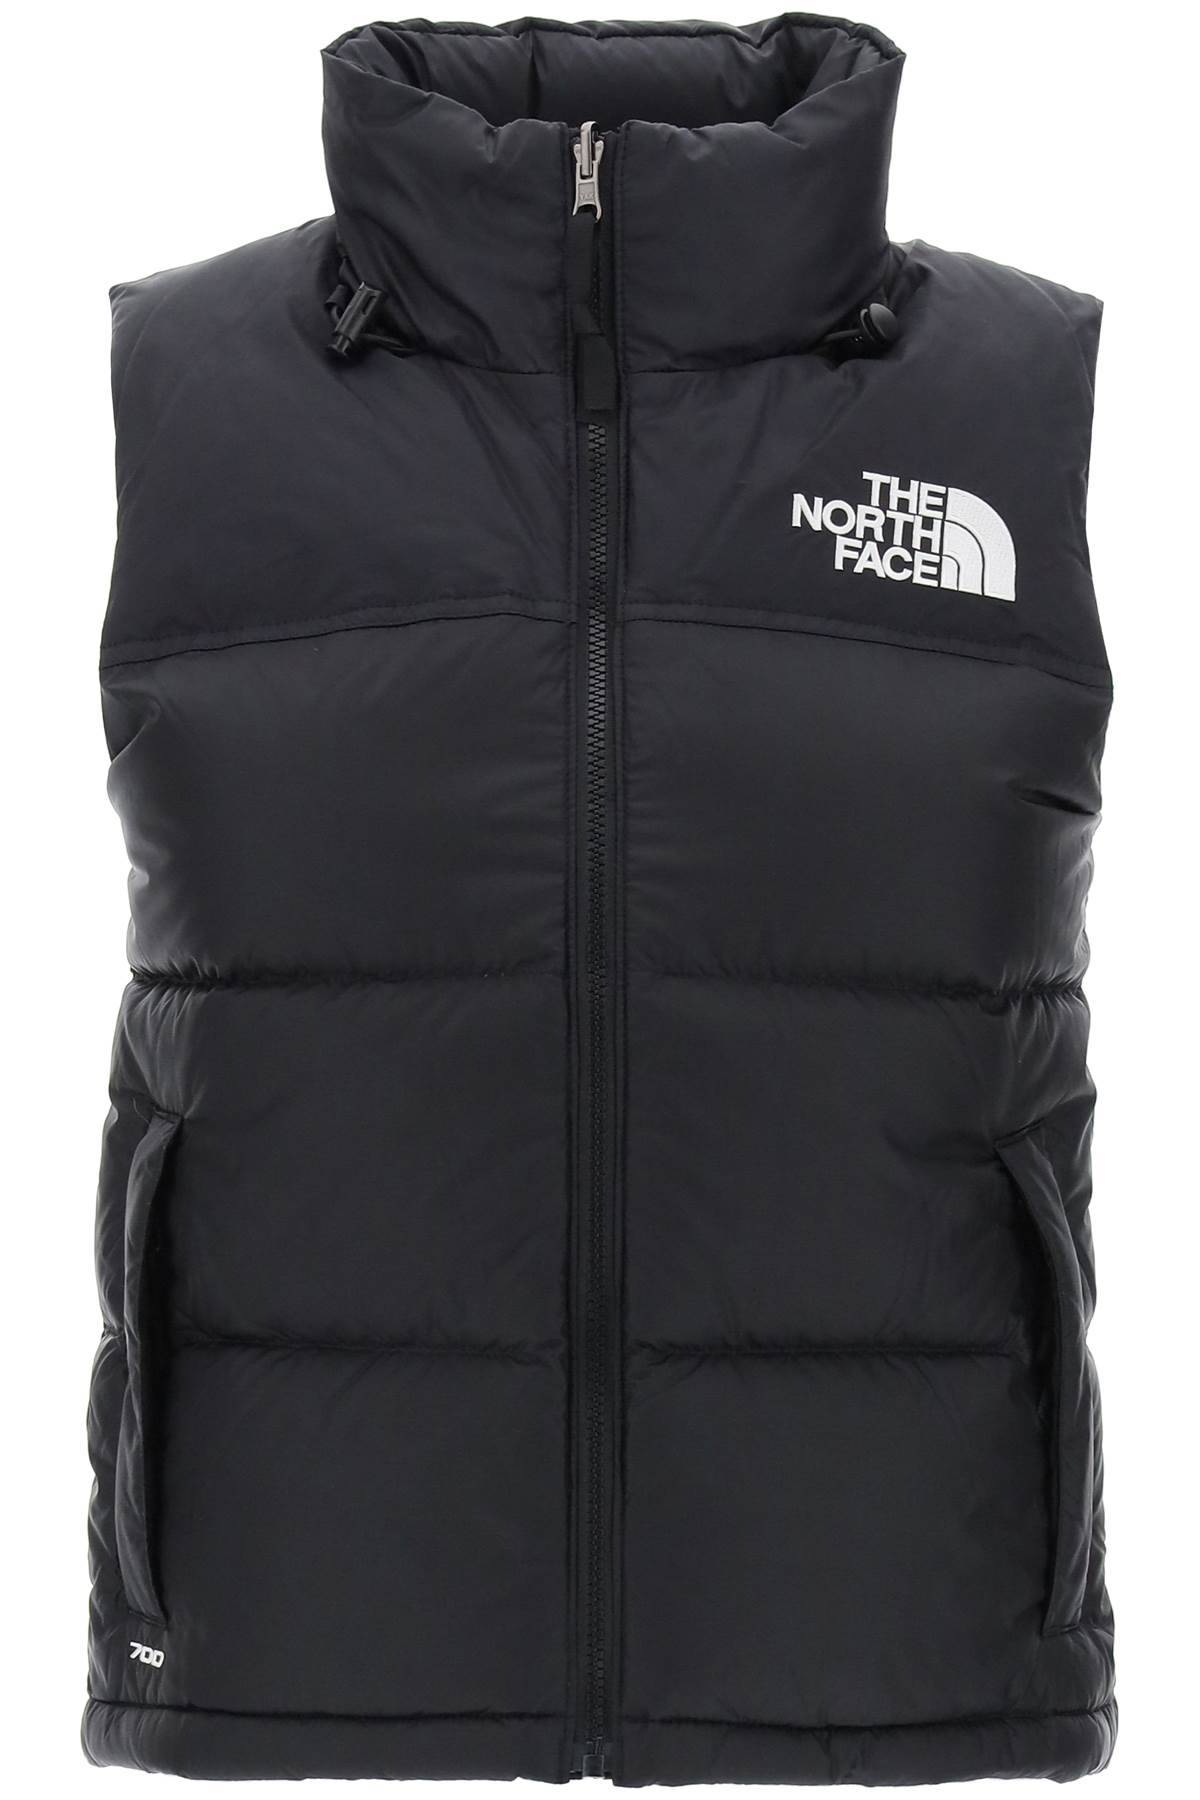 The North Face THE NORTH FACE 1996 retro nuptse vest